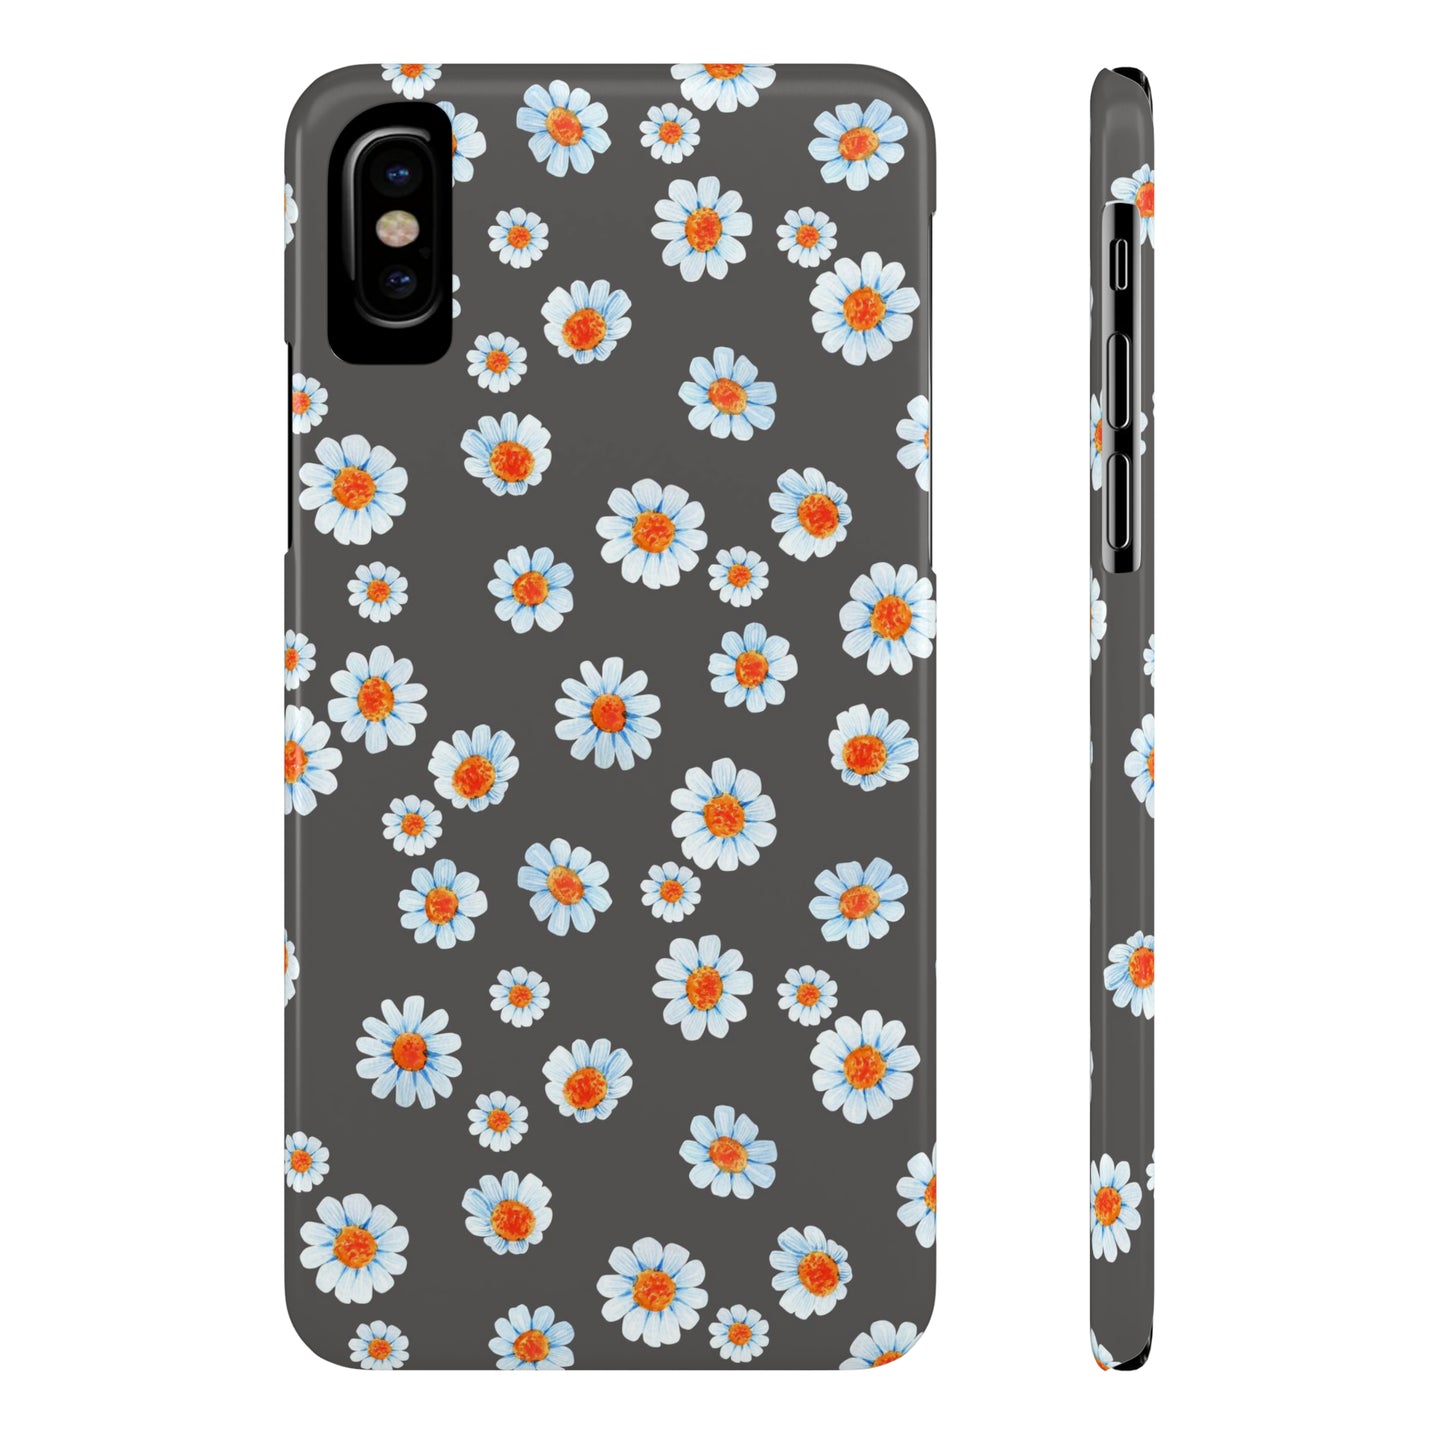 Black Marguerite iPhone case